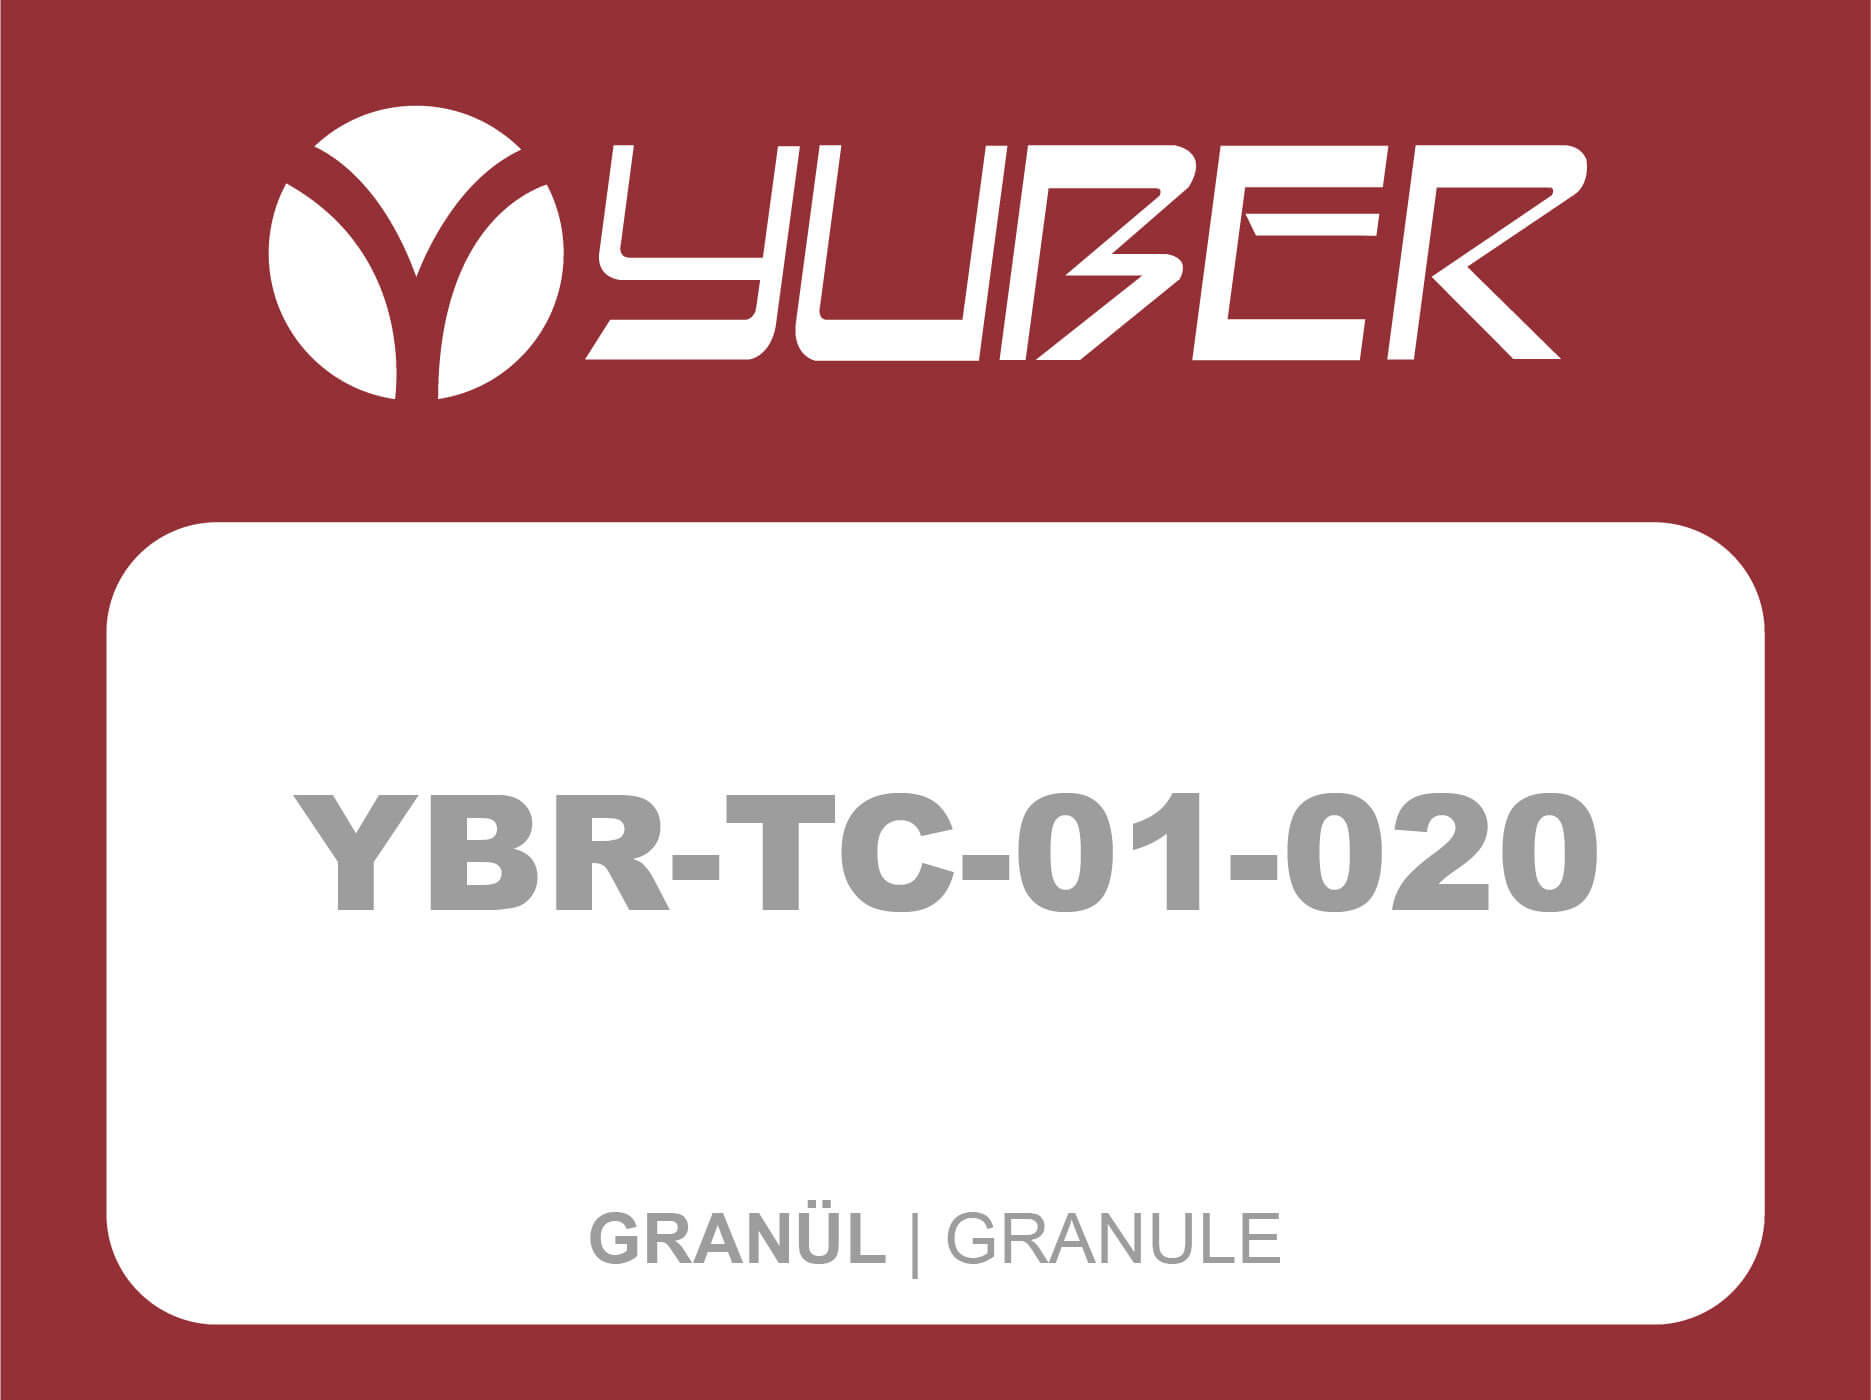 YBR TC 01 020 Granule Yuber Metallurgy